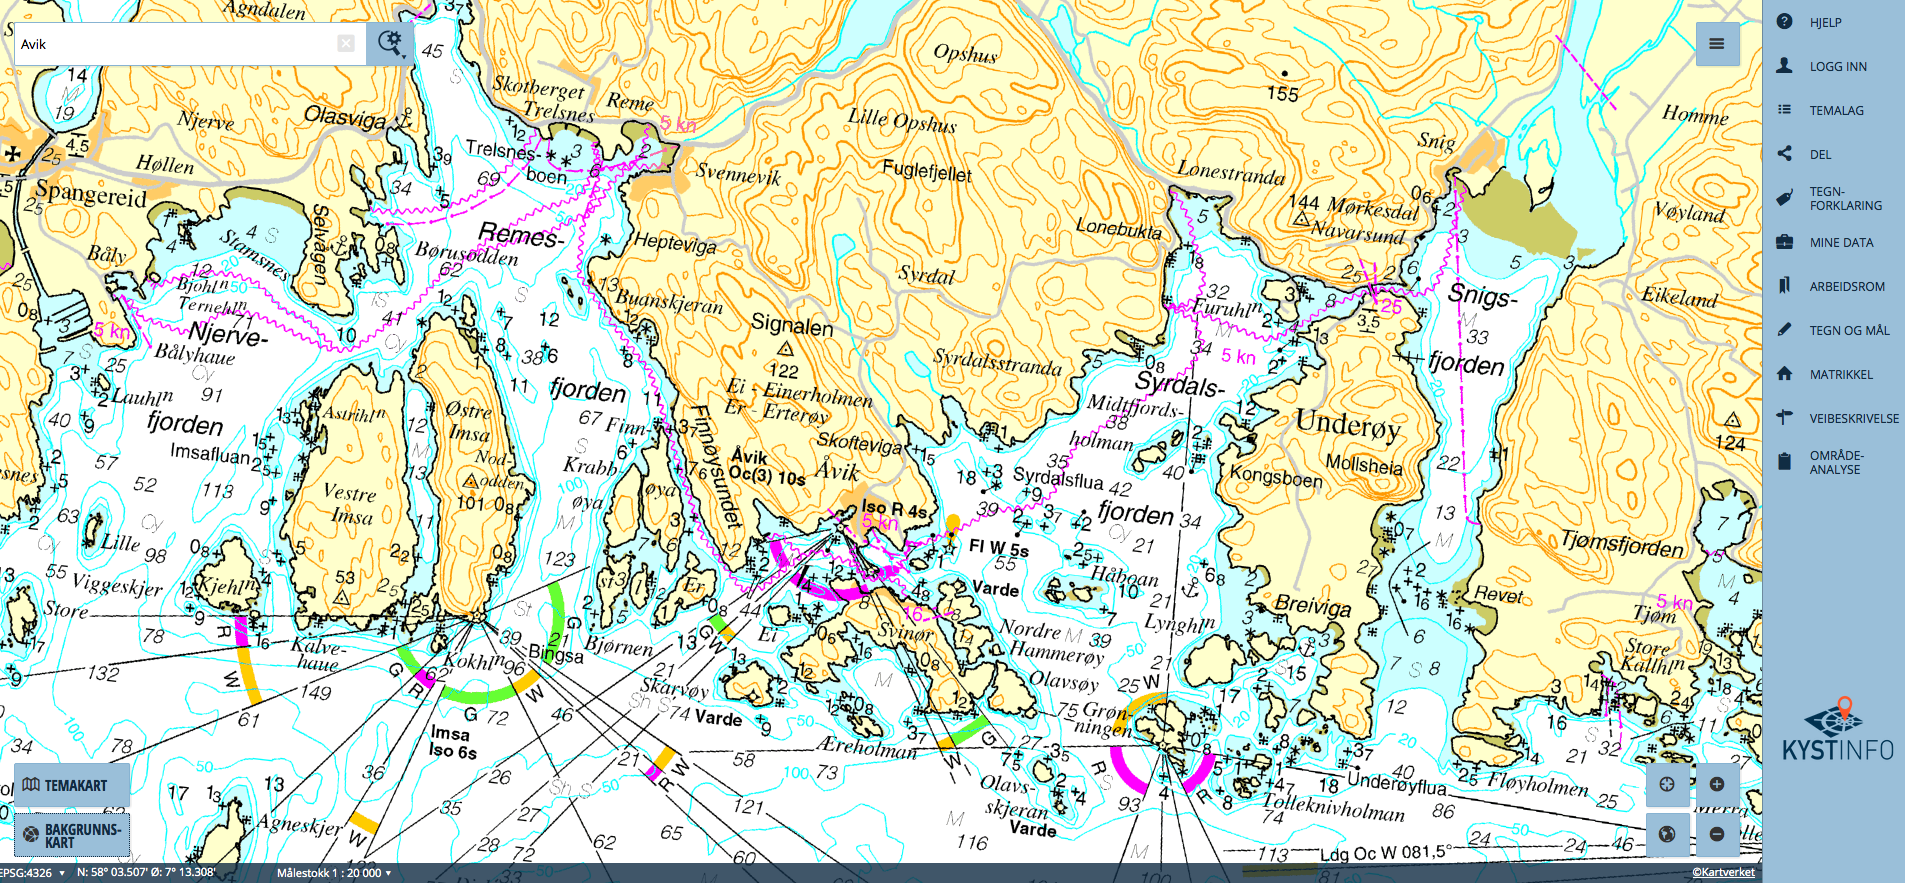 freie seekarten mit tiefenangaben Seekarte Fur Norwegen Kostenlos Und Einfach Blinker freie seekarten mit tiefenangaben